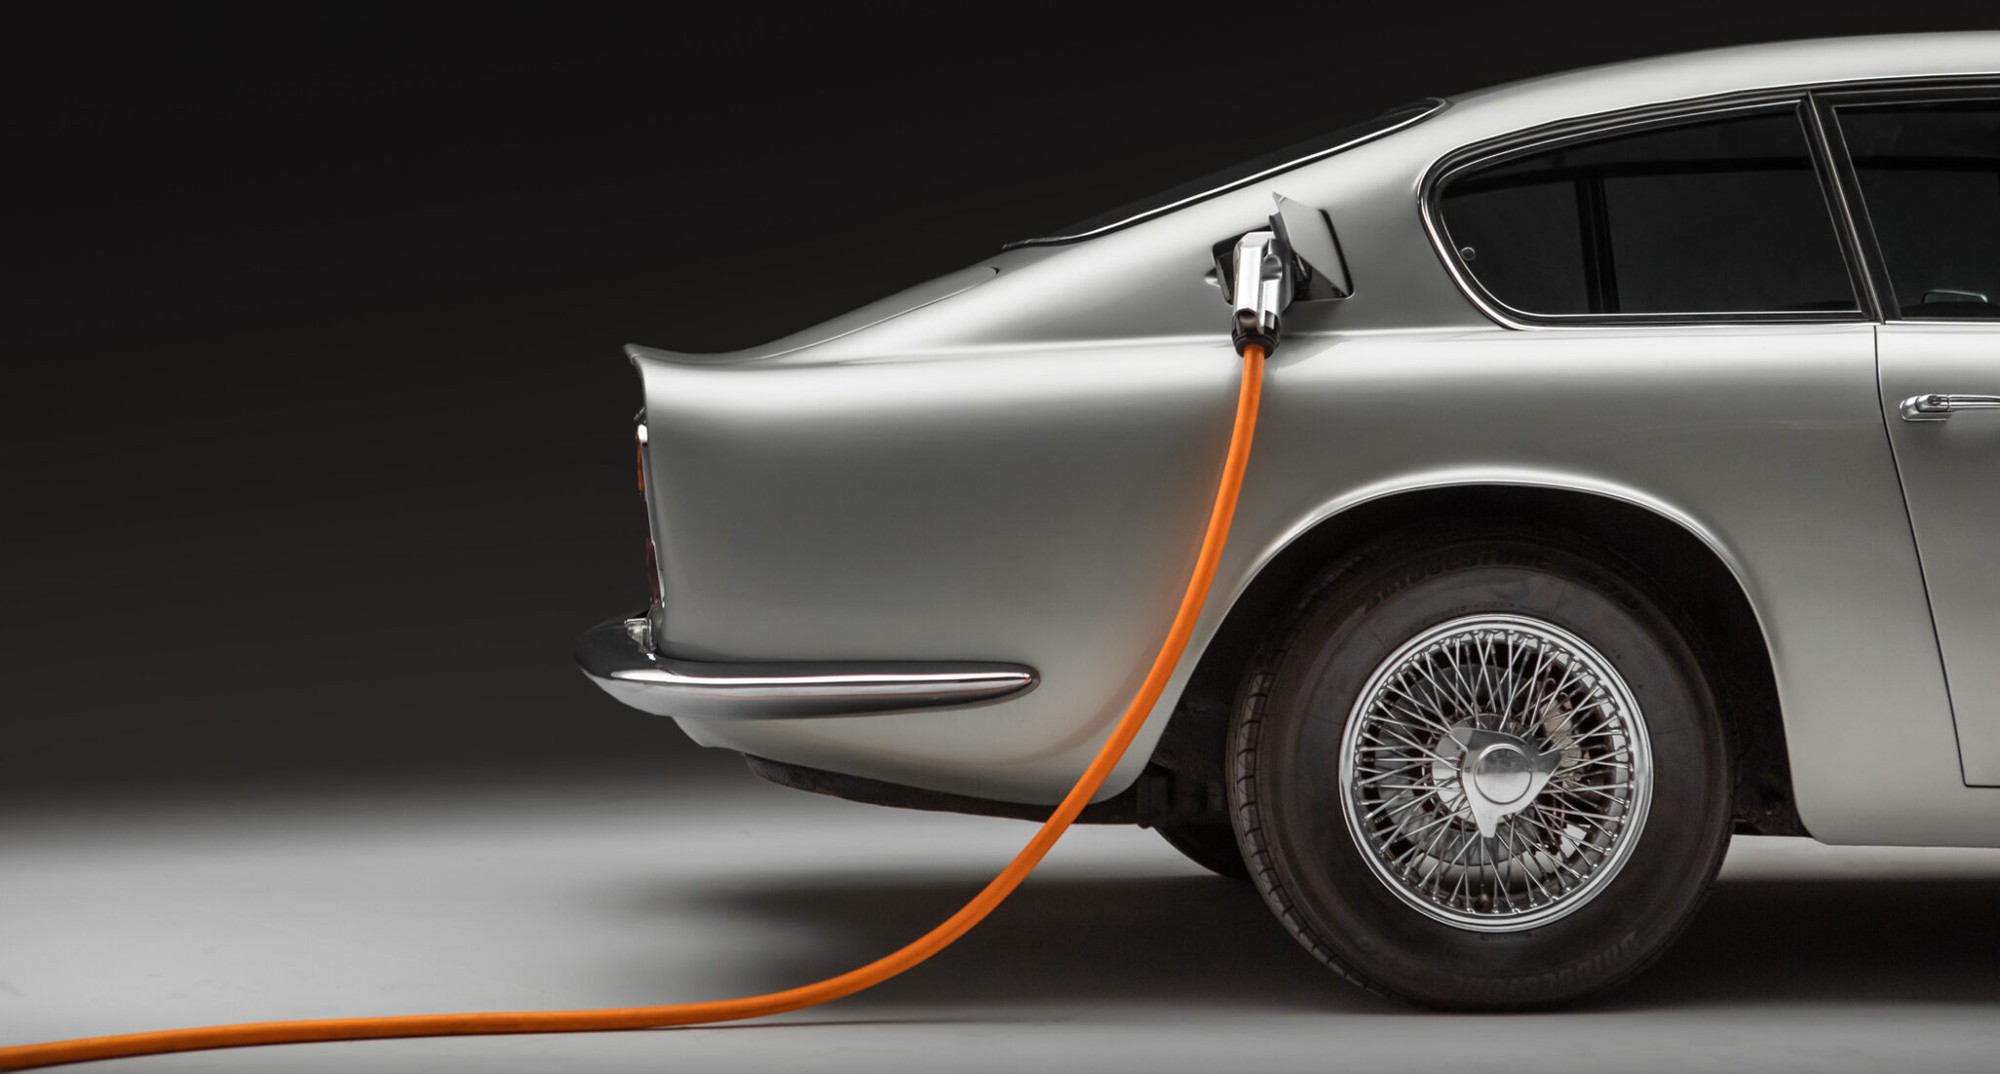 Aston Martin DB6 thuần điện có giá bán gần 20 tỷ đồng